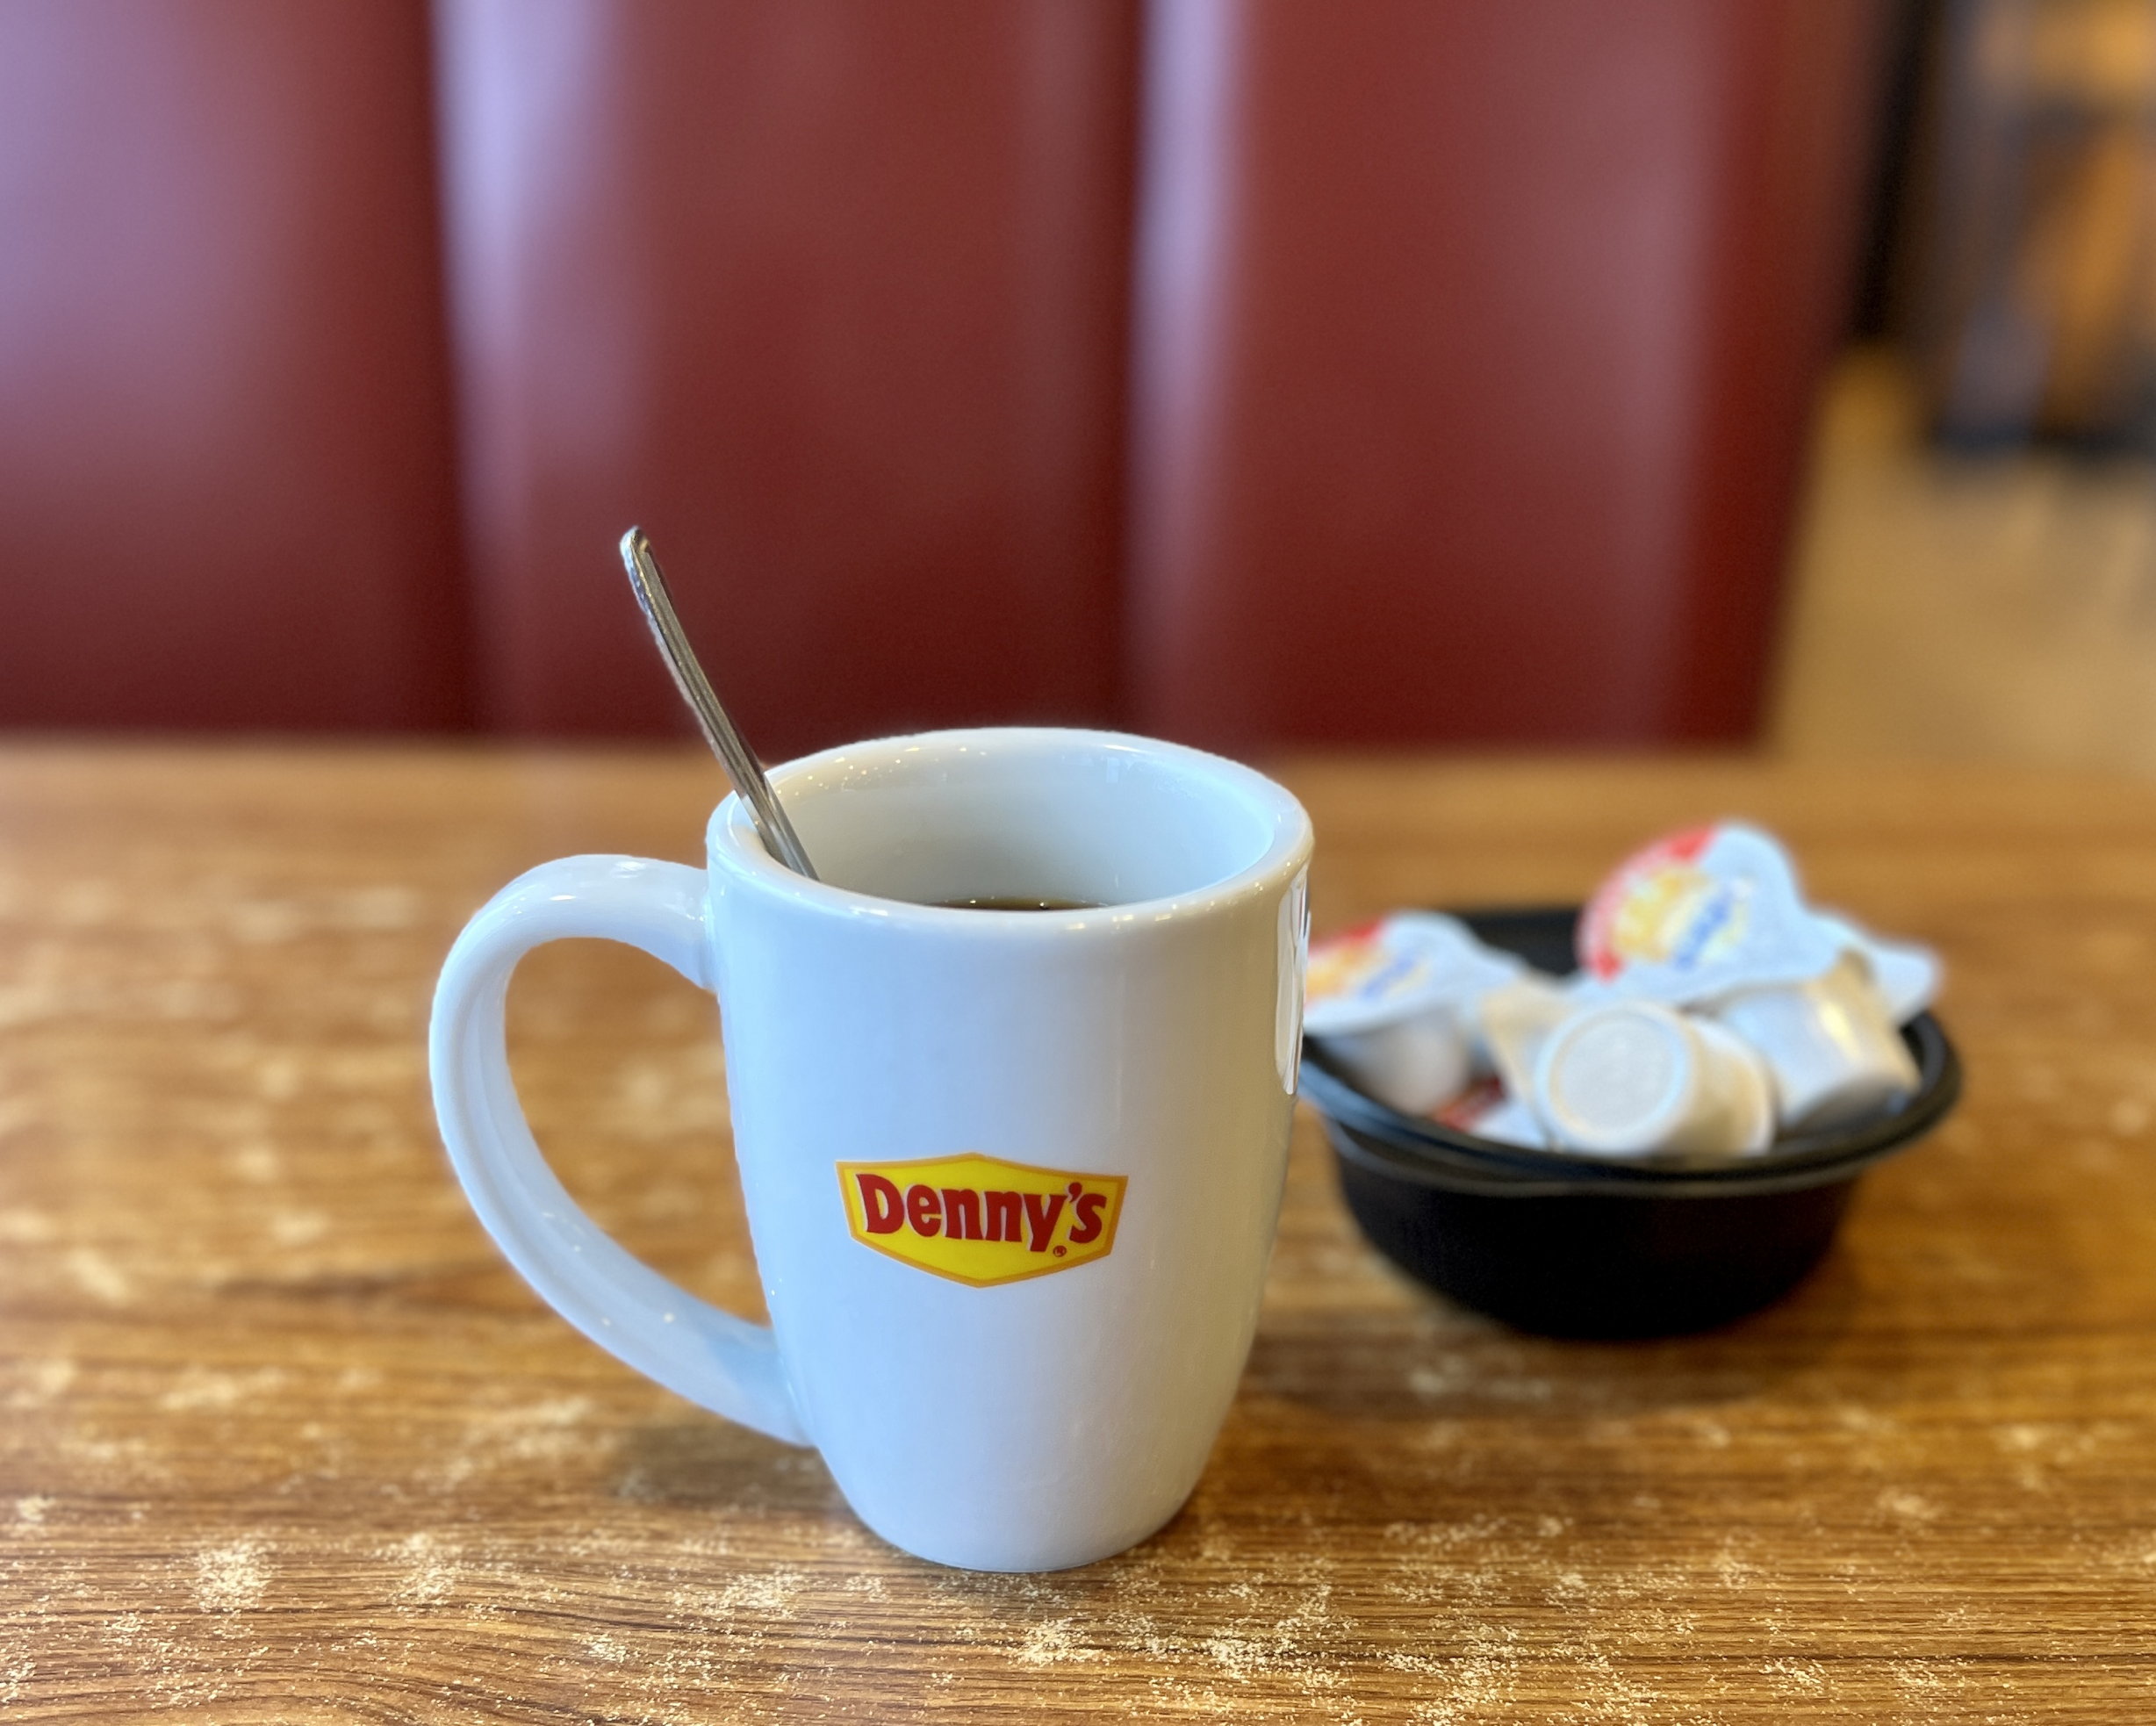 Eine Tasse Kaffee von Denny's in Grossaufnahme, daneben ein Schälchen mit Kaffeerahm. Dahinter, unscharf, das typische weinrote Kunstleder der Sitzbänke.